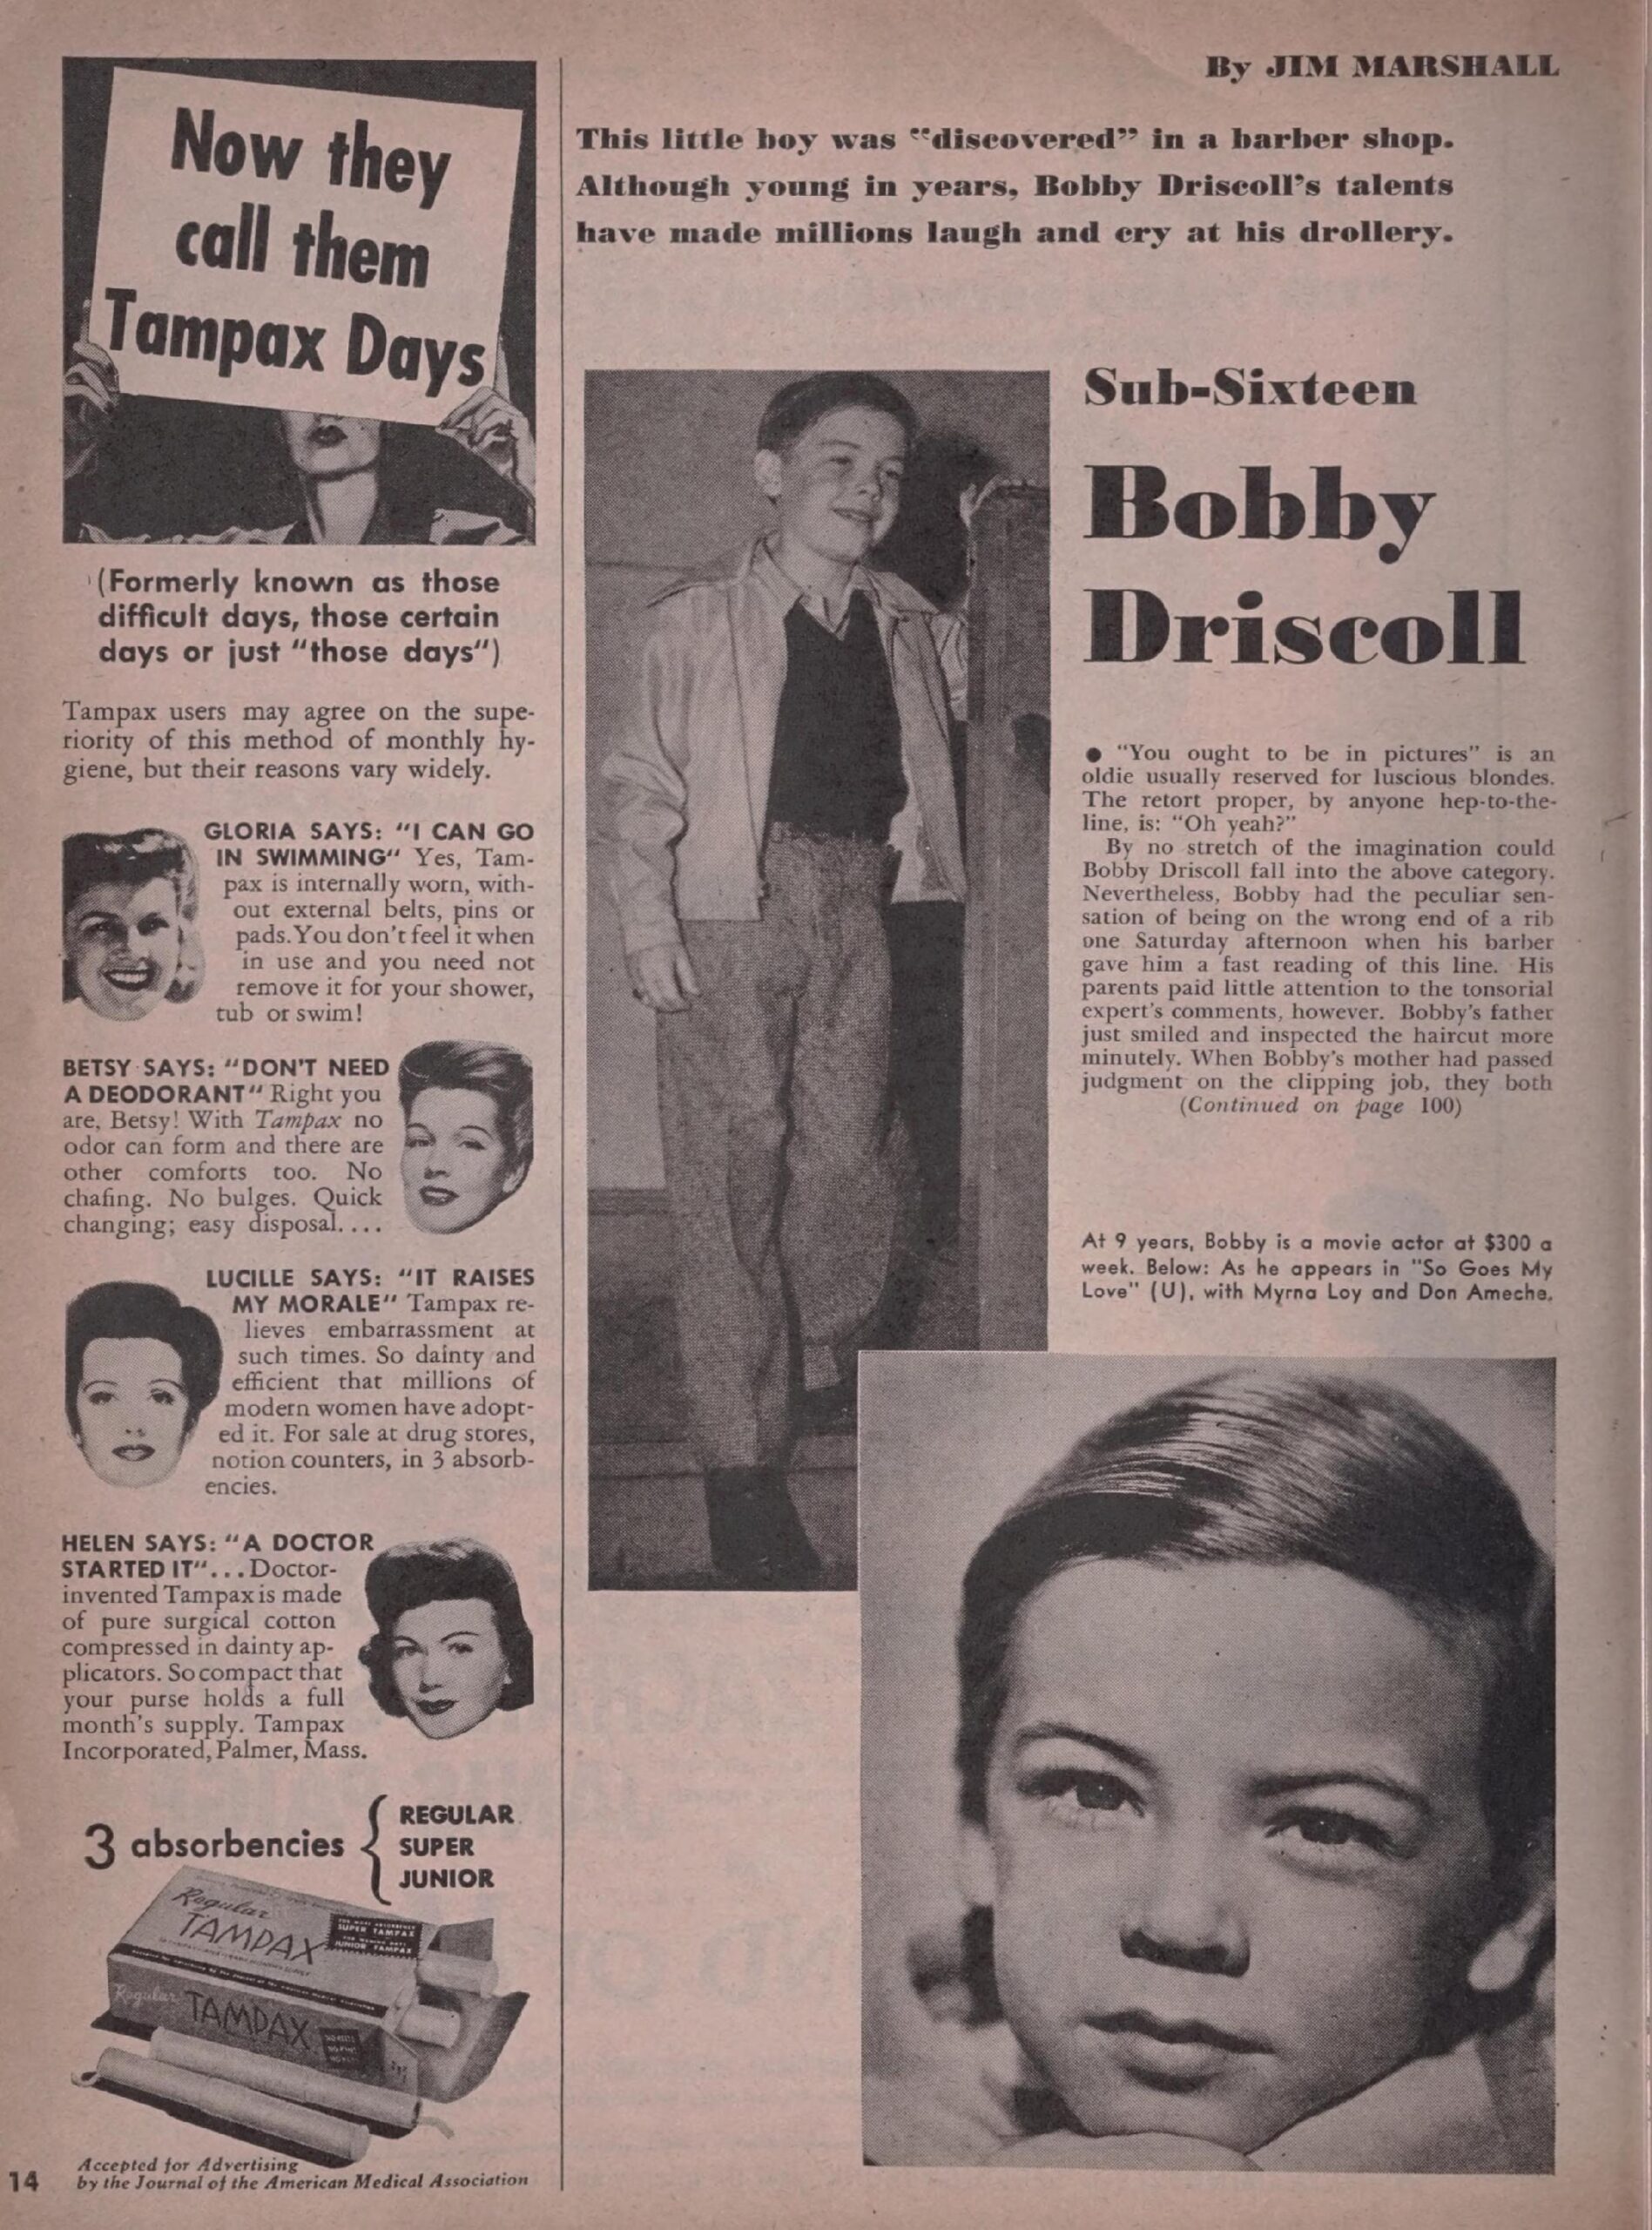 Sub-Sixteen – Bobby Driscoll